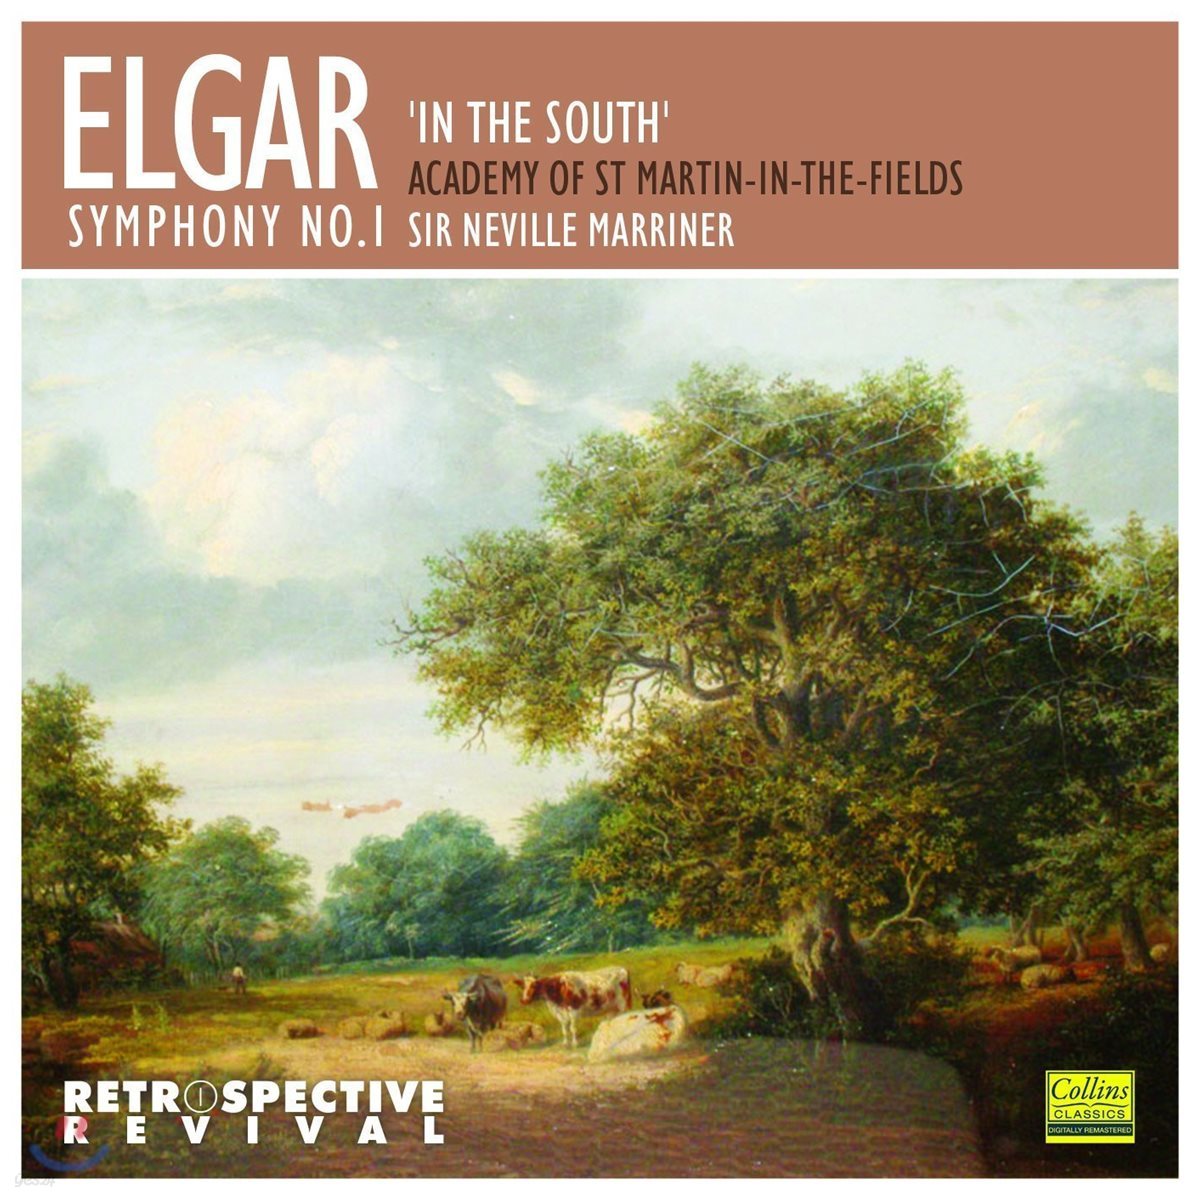 Neville Marriner 엘가: 교향곡 1번, 남국에서 서곡 - 아카데미 오브 세인트 마틴 인 더 필즈, 네빌 마리너 (Elgar: Symphony No.1, In the South)